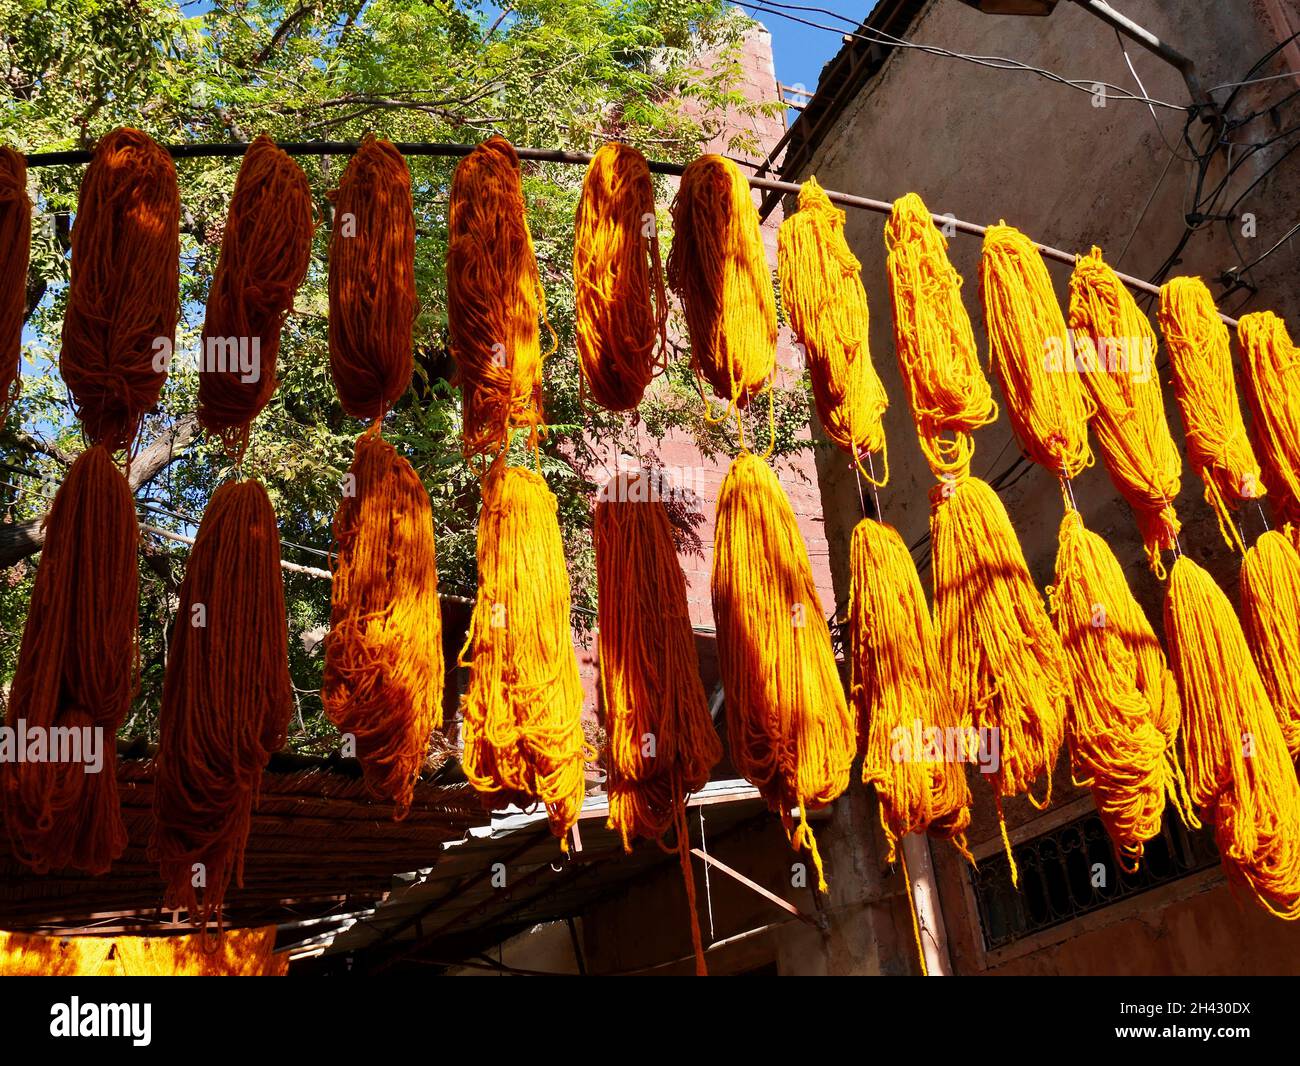 Bündeln aus orangefarbener Wolle hängen zum Trocknen an Färsen Souk, Marrakesch, Marokko. Stockfoto